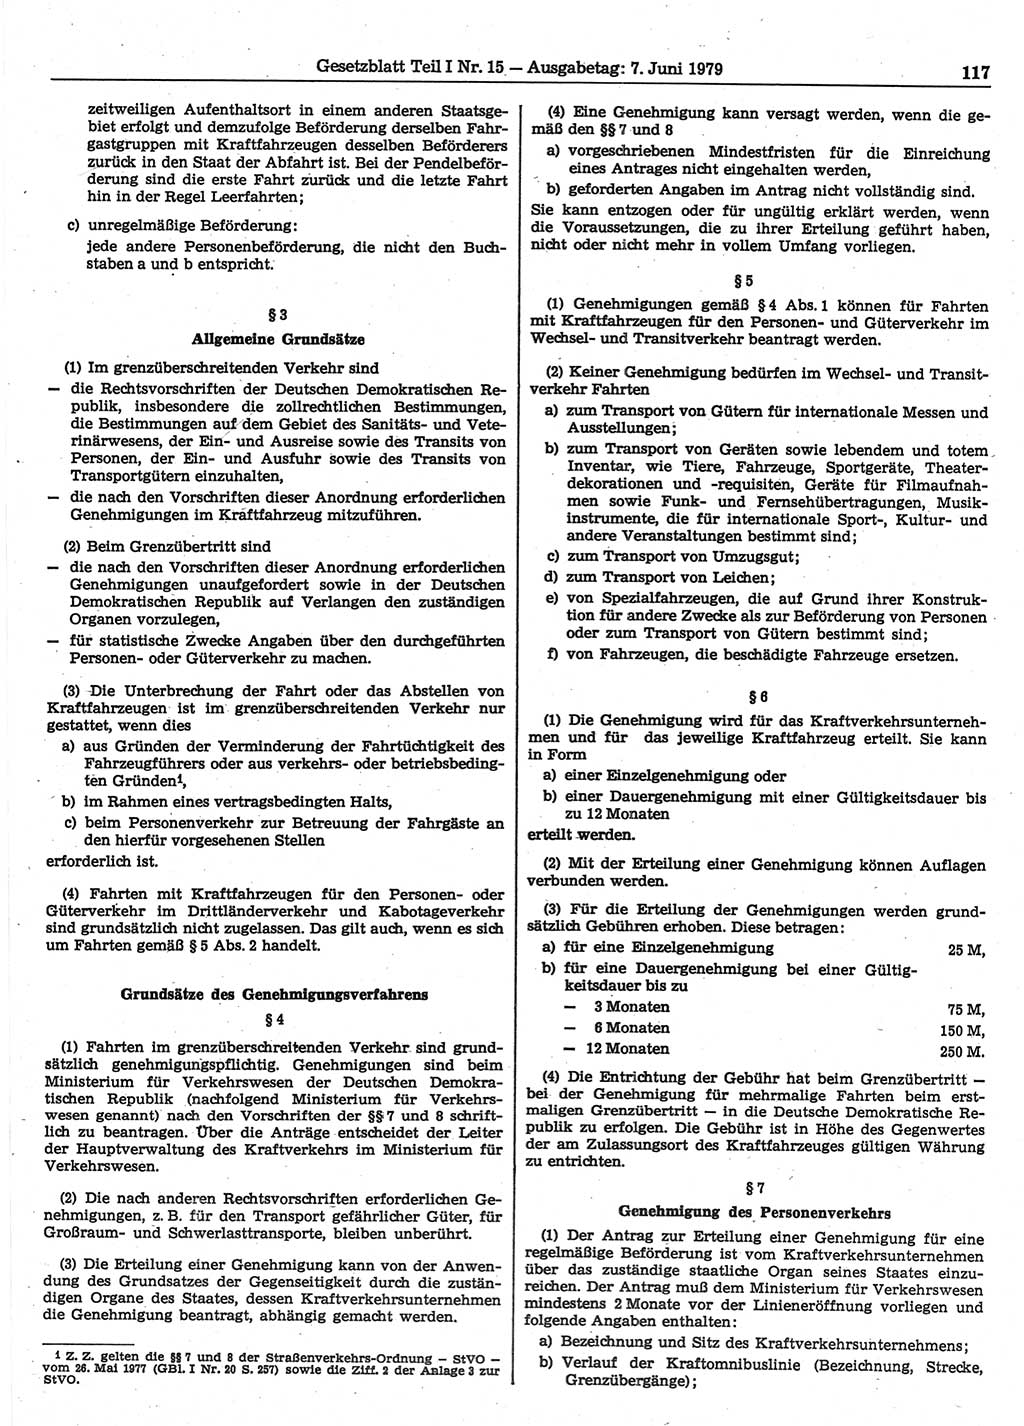 Gesetzblatt (GBl.) der Deutschen Demokratischen Republik (DDR) Teil Ⅰ 1979, Seite 117 (GBl. DDR Ⅰ 1979, S. 117)